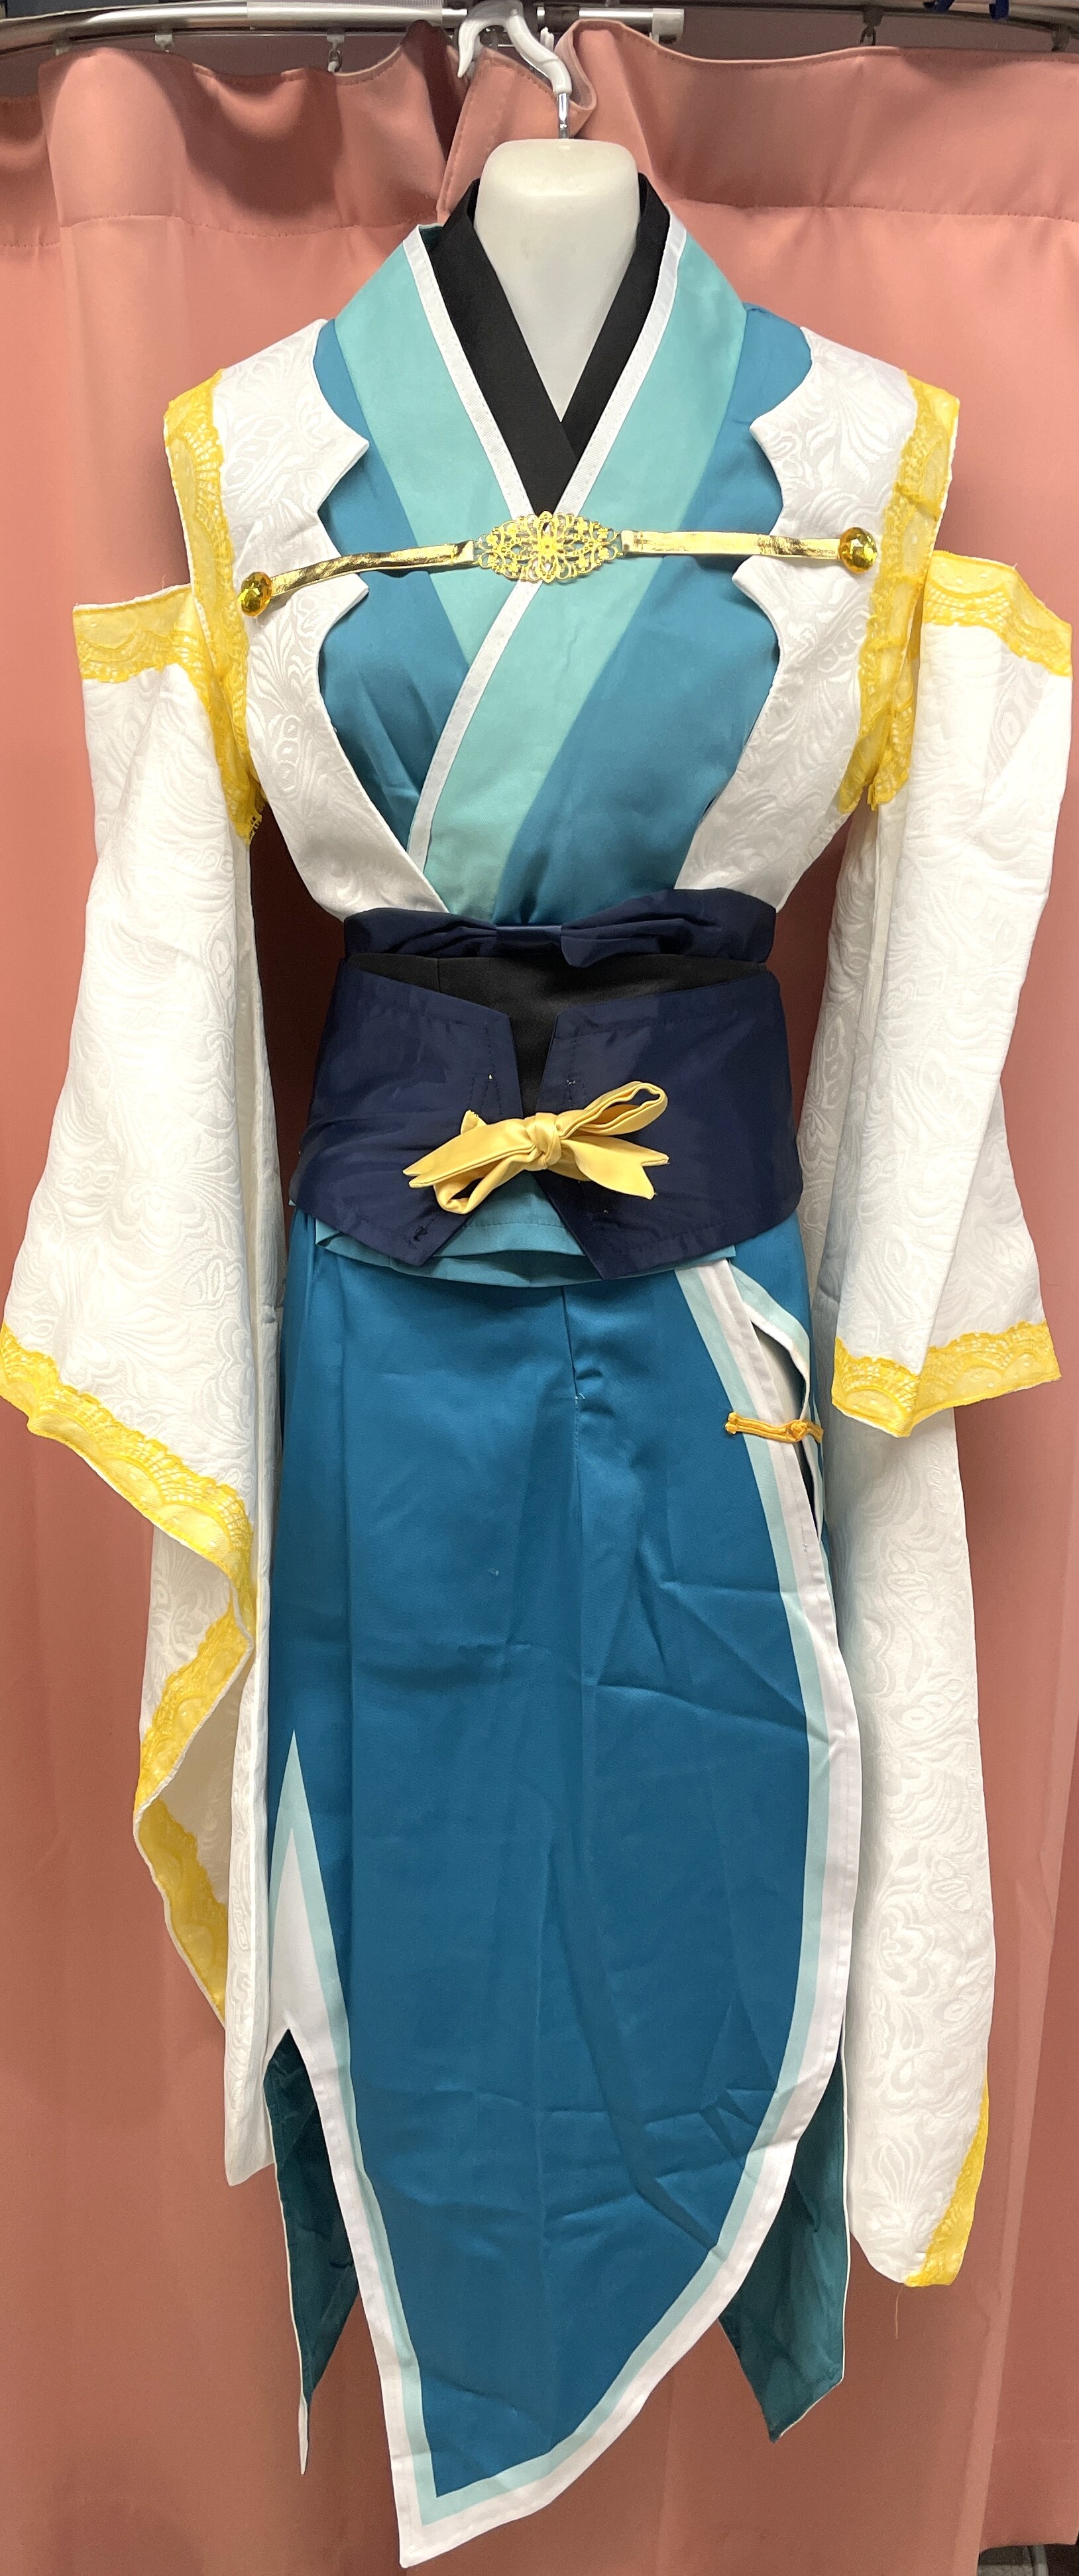 Fate/Grand Order 清姫 第二再臨 女性Sサイズ コスプレ衣装